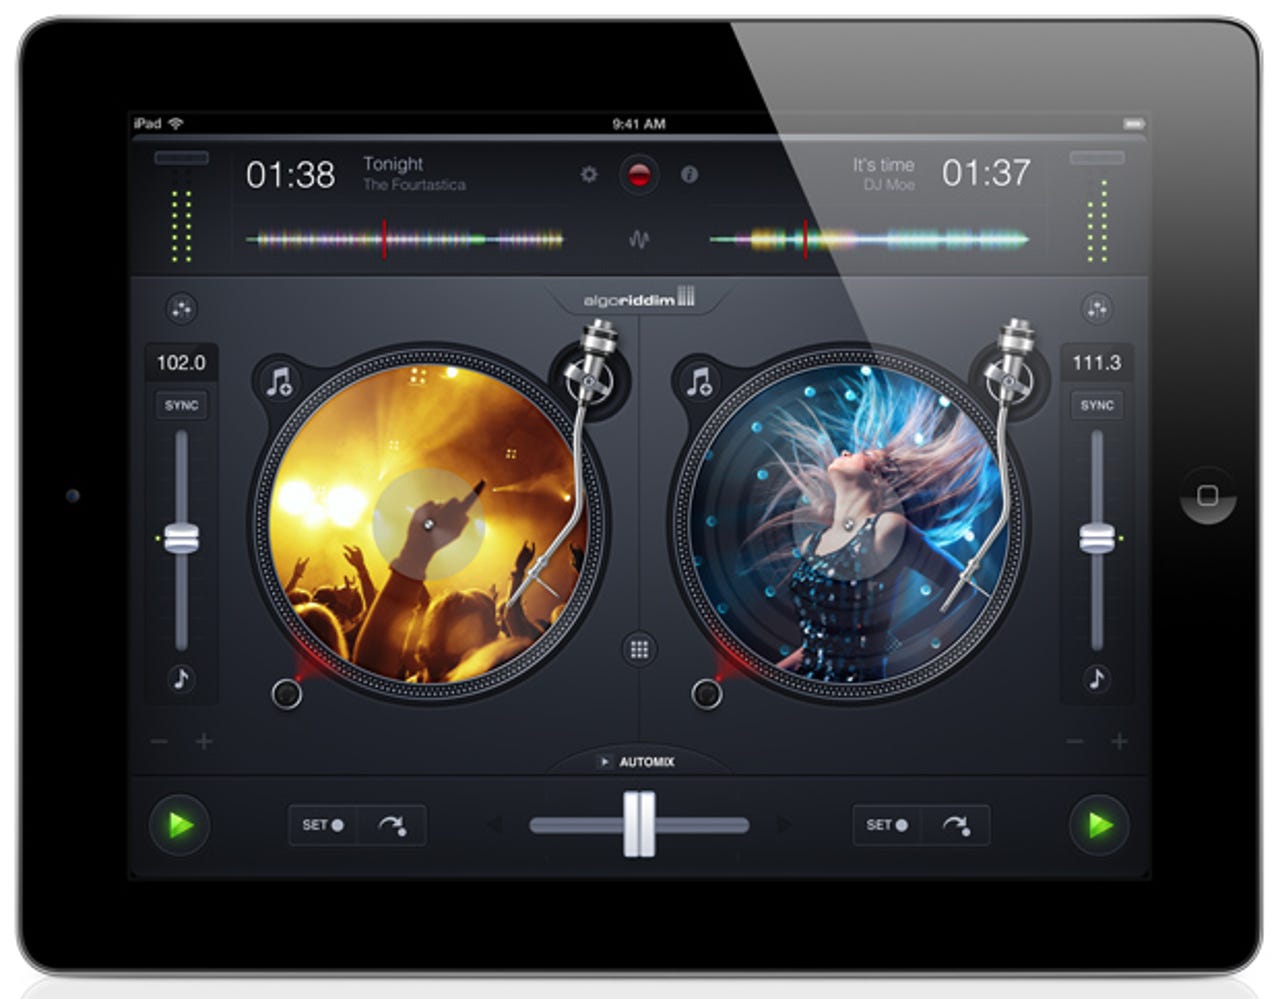 My favorite iPad app gets better: djay 2 is a party rocker - Jason O'Grady